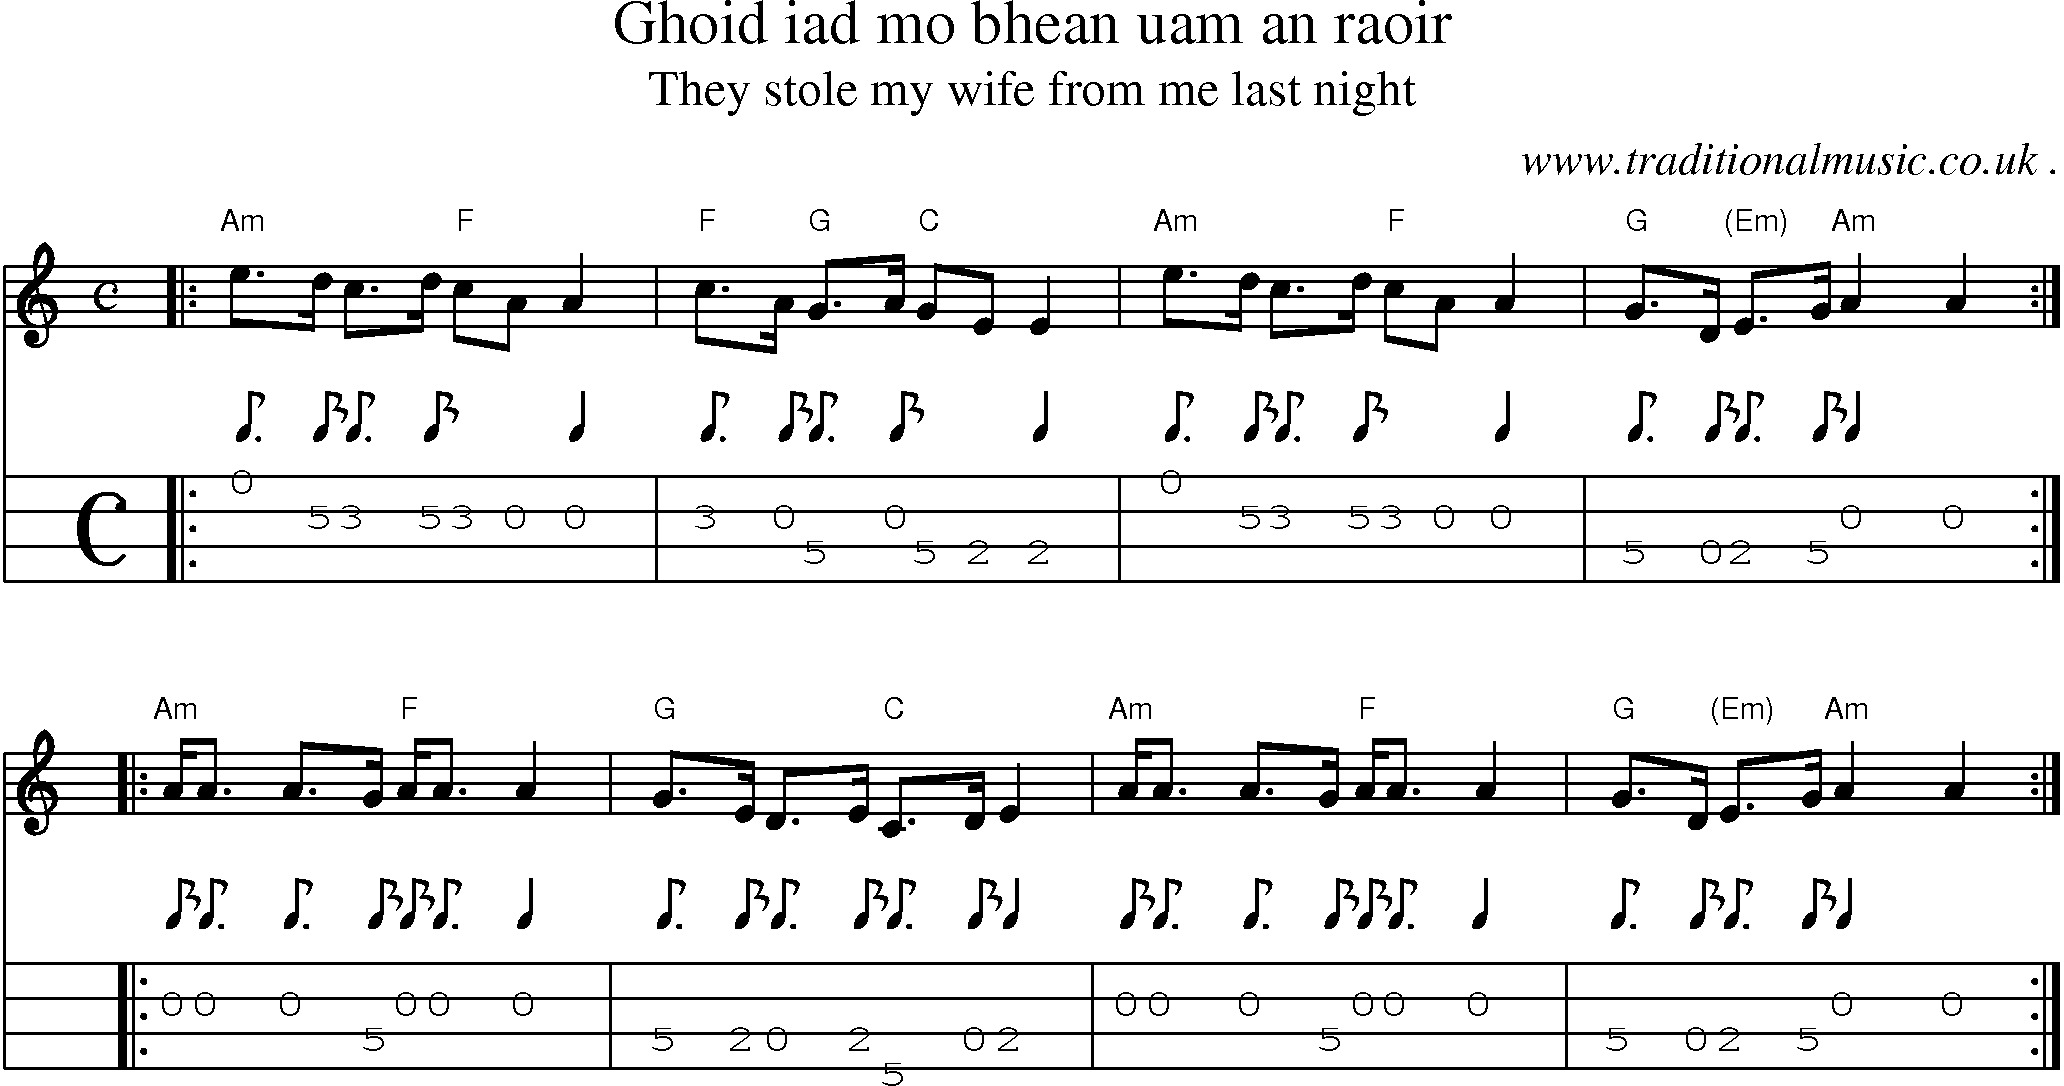 Sheet-music  score, Chords and Mandolin Tabs for Ghoid Iad Mo Bhean Uam An Raoir